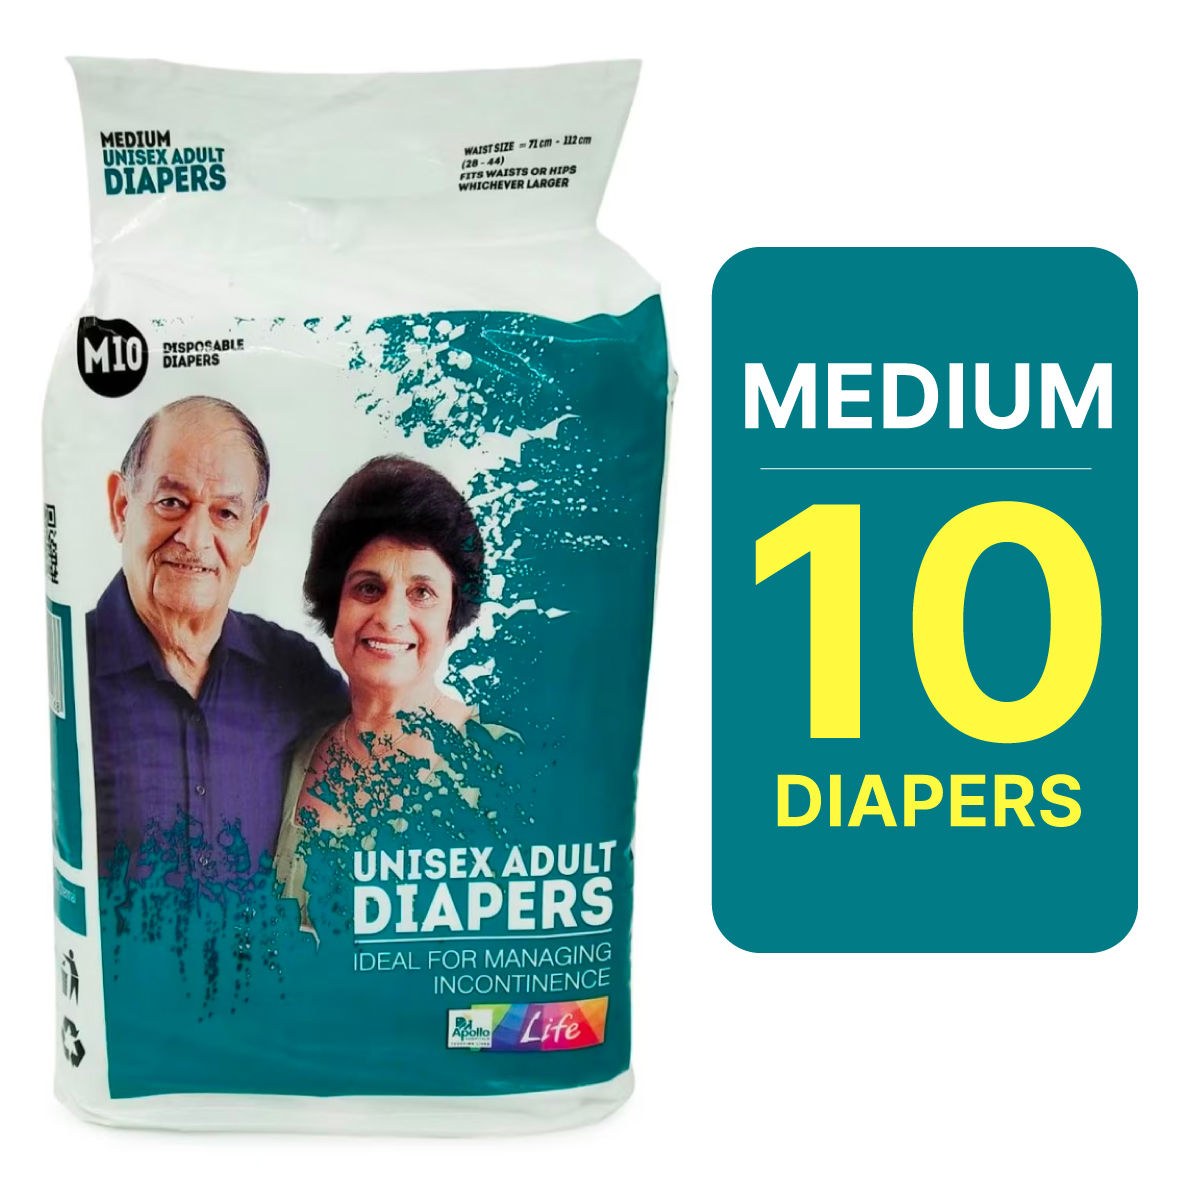 Buy Apollo Life Unisex Adult Diapers Medium, 10 Count Online